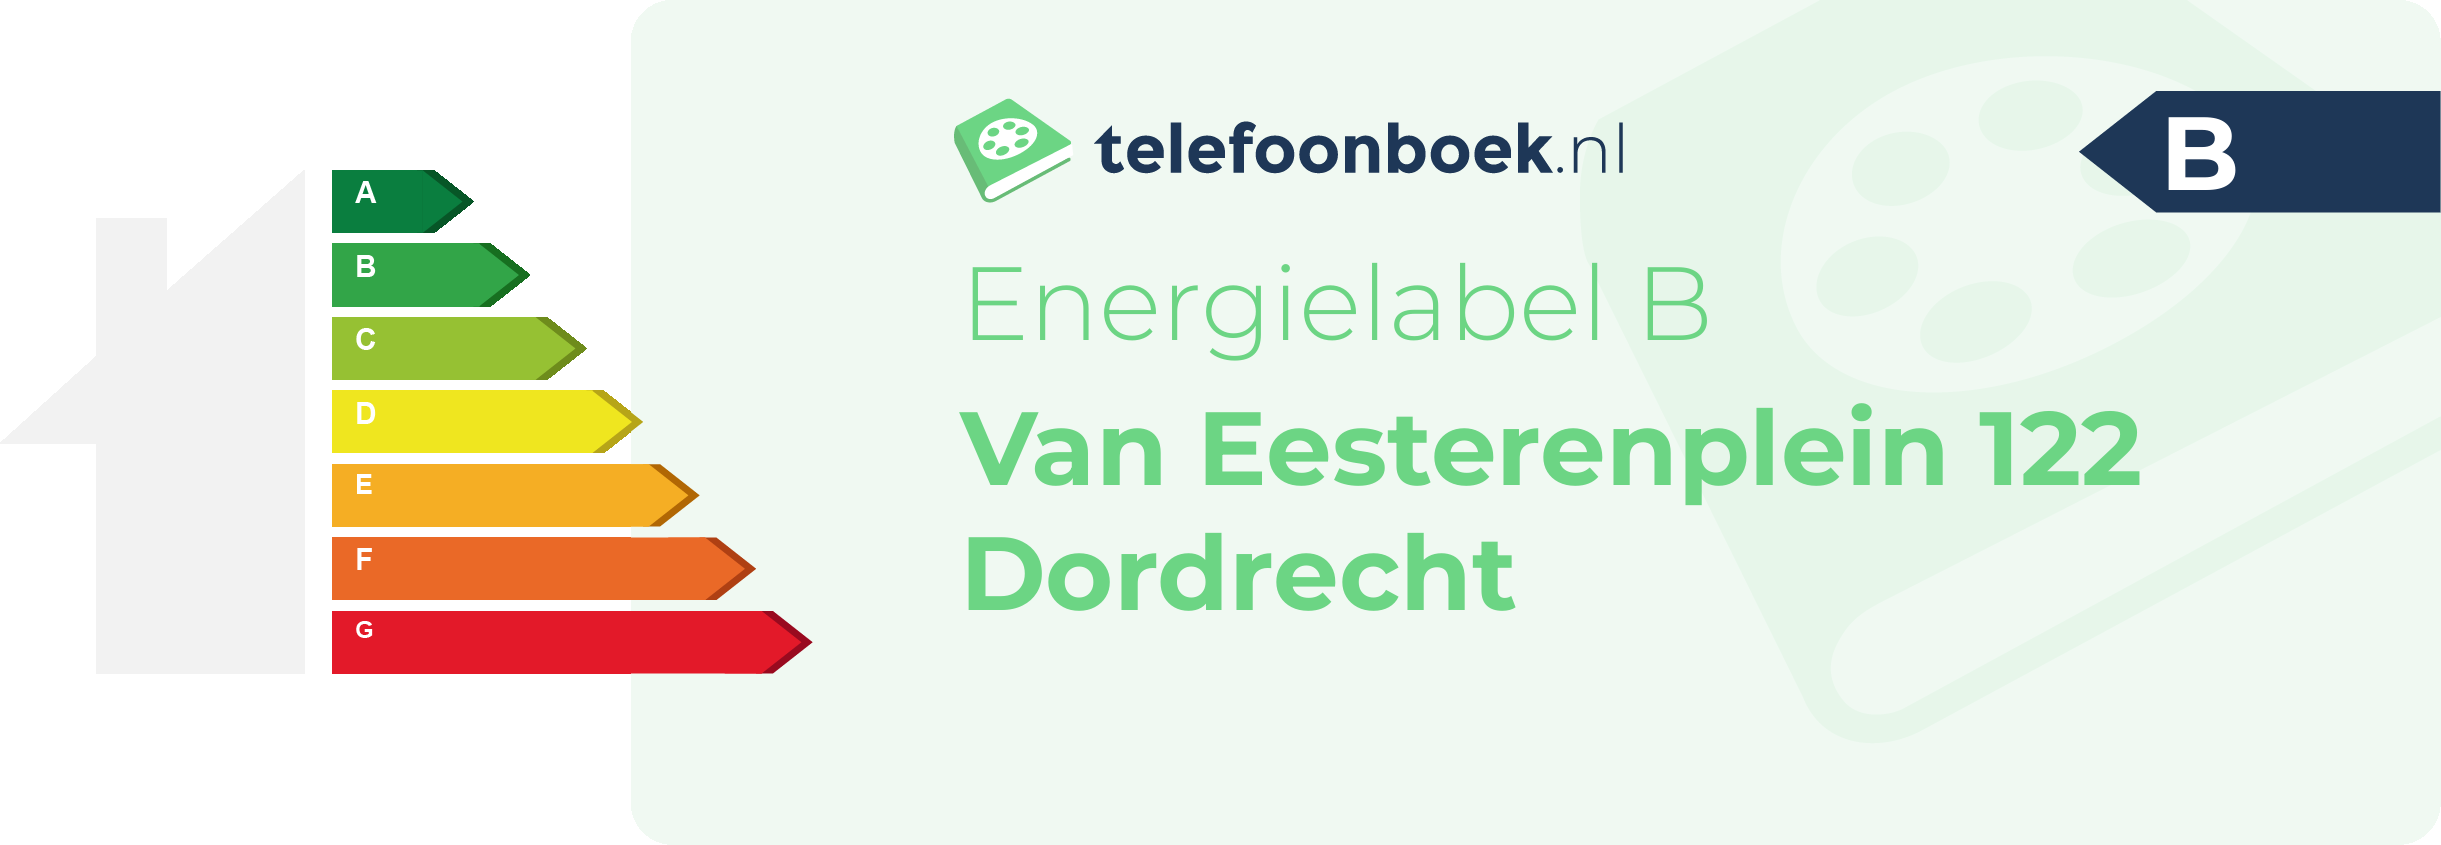 Energielabel Van Eesterenplein 122 Dordrecht